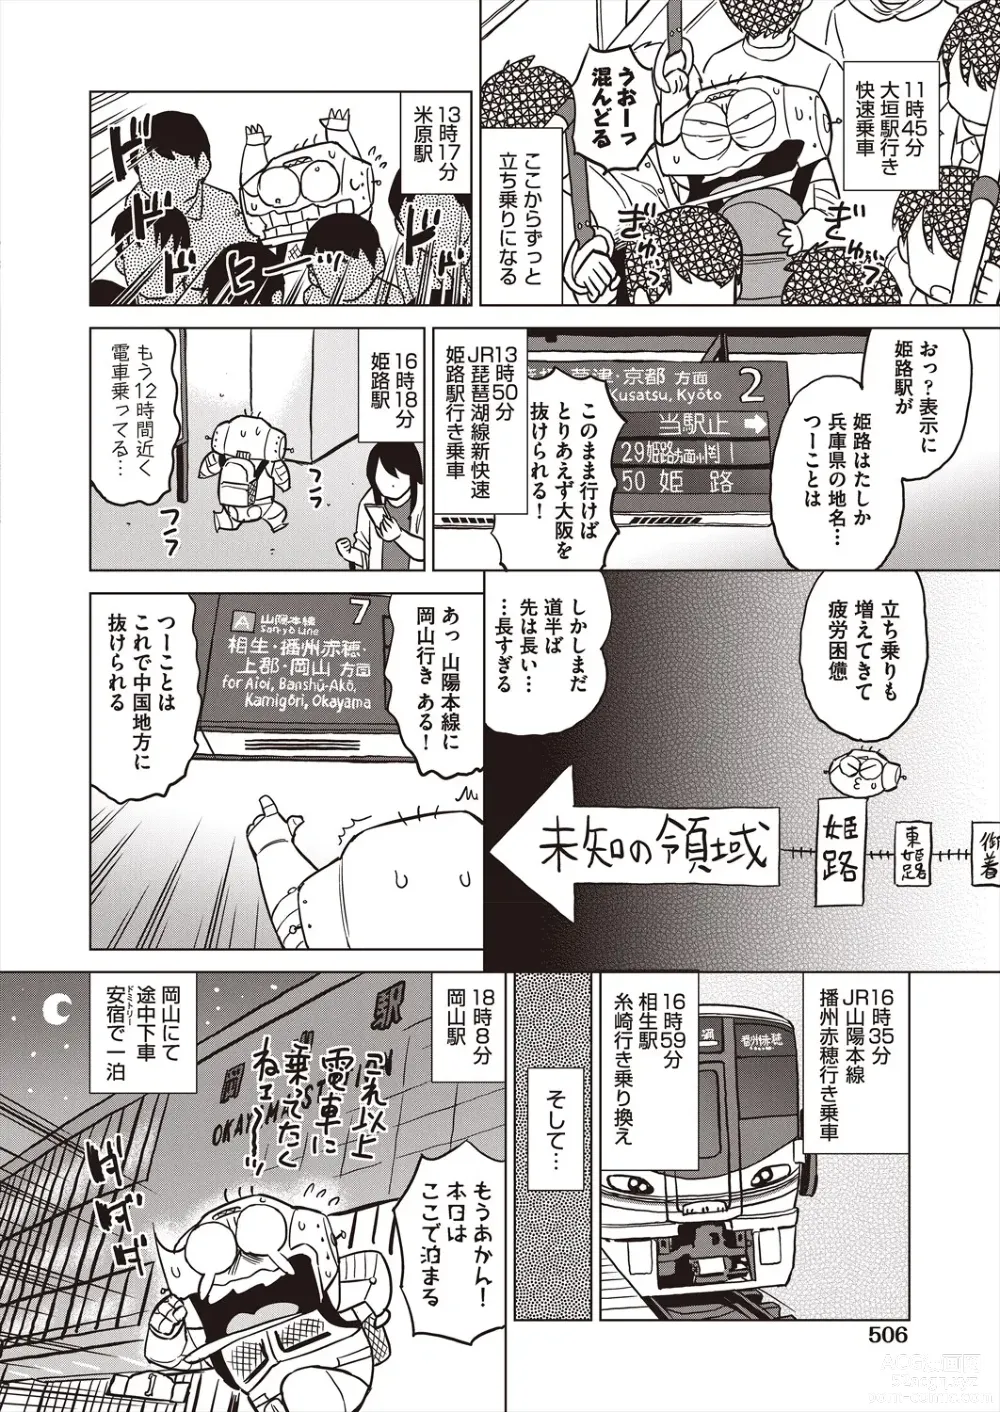 Page 504 of manga COMIC AUN 2023-12